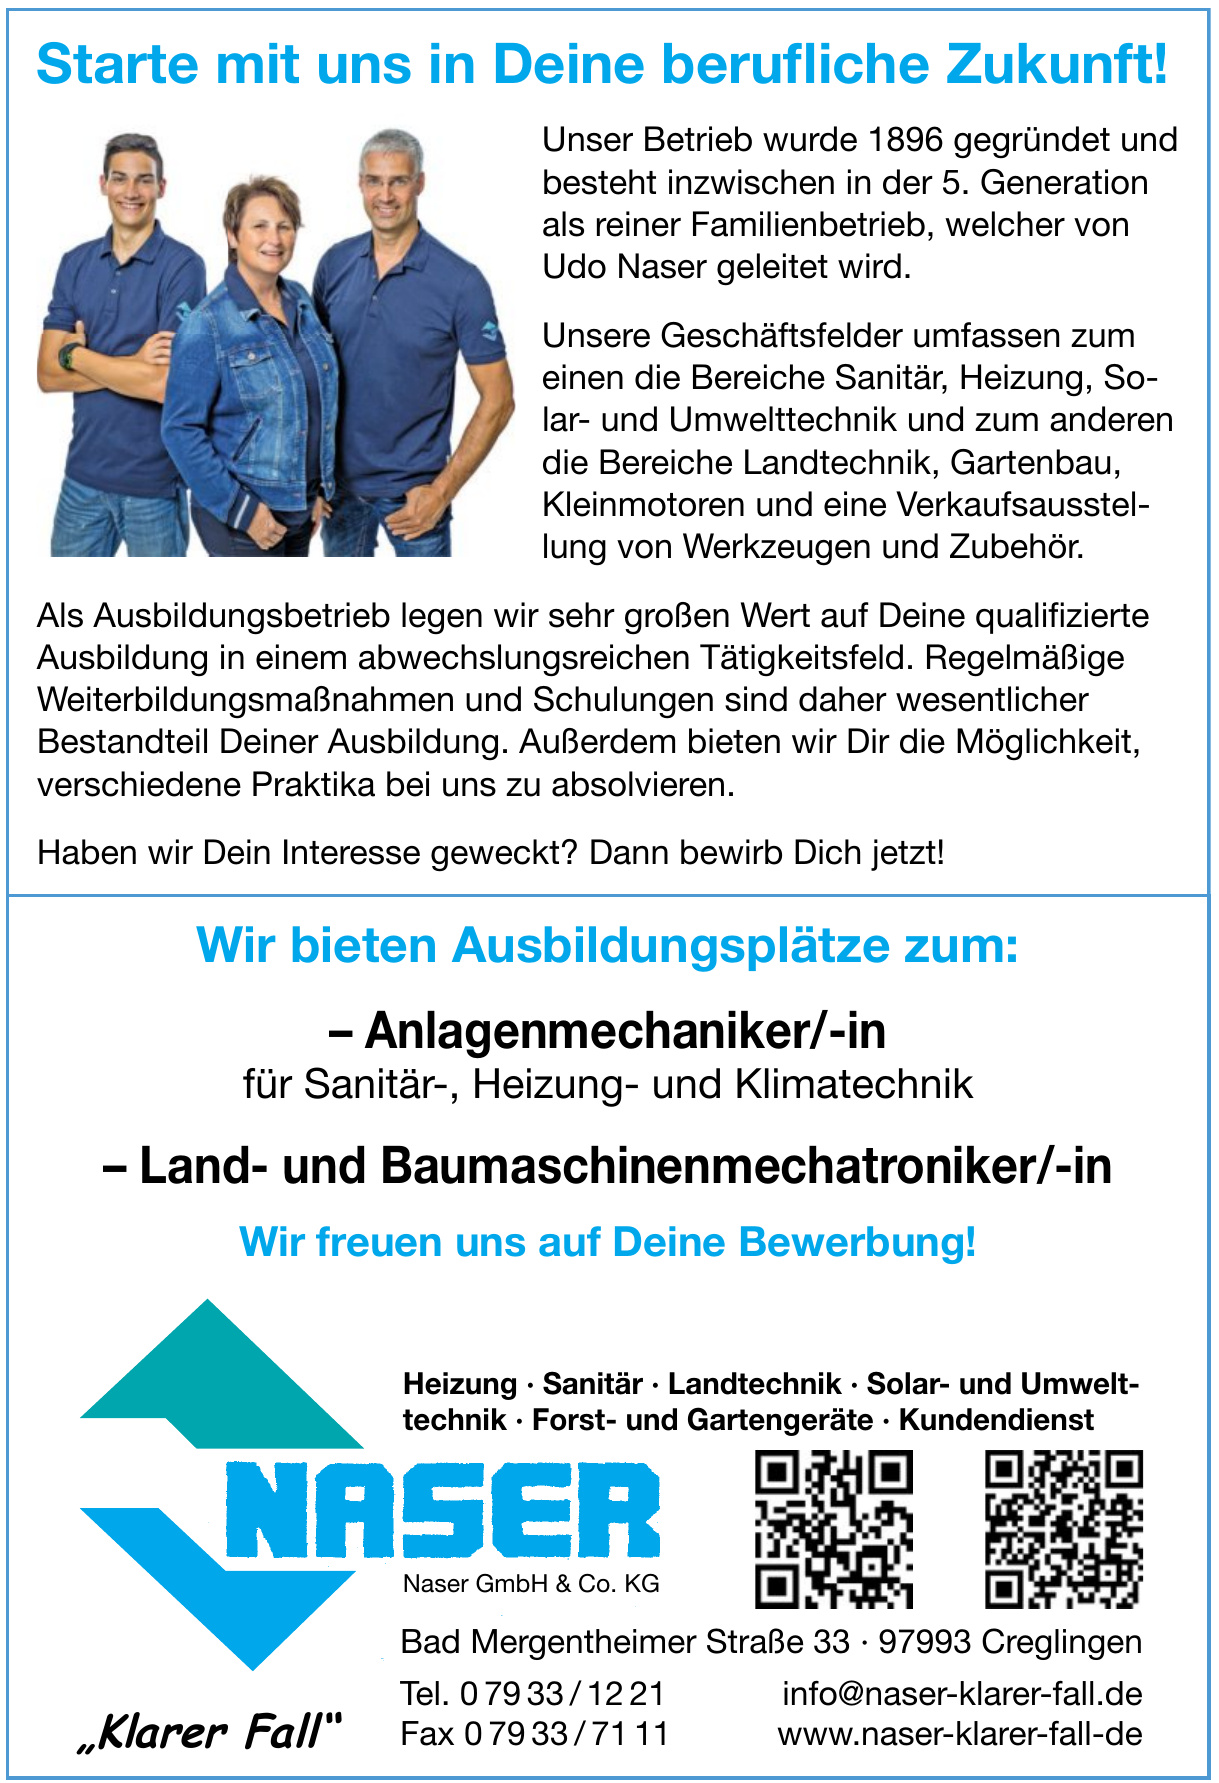 Naser GmbH & Co. KG